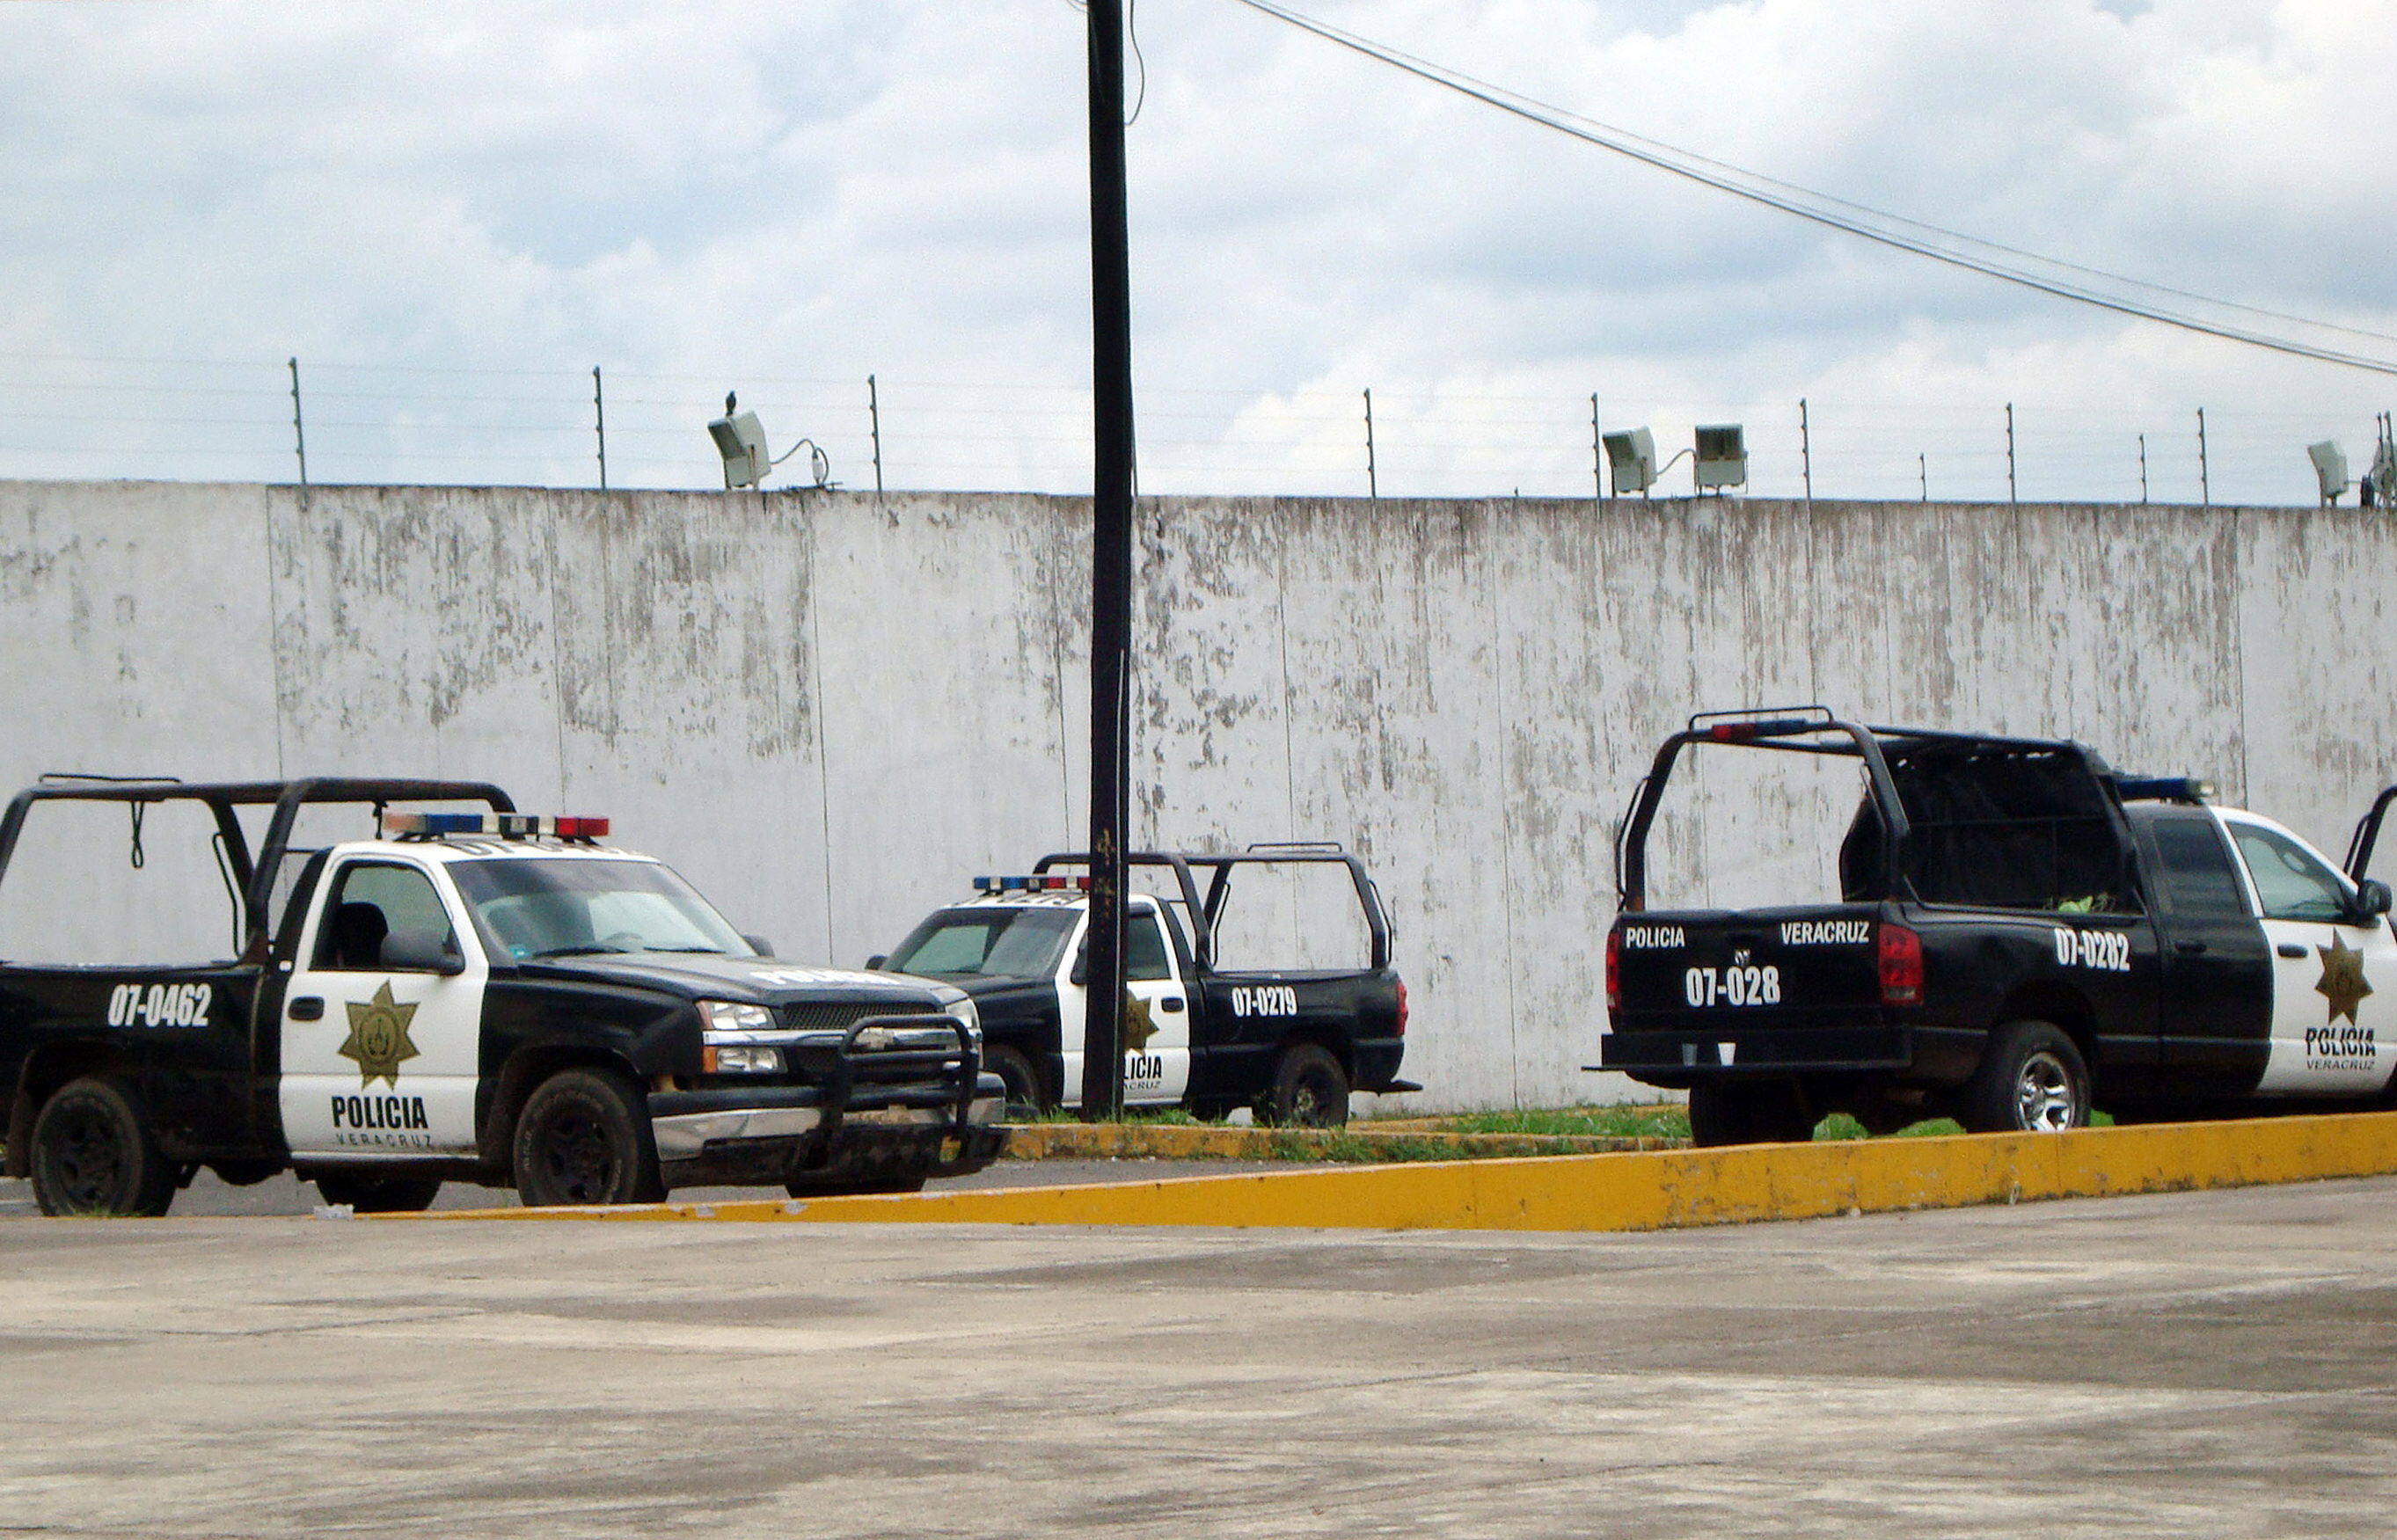 Entre los acusados están al menos dos divisiones policiales que forman parte de la administración del gobernador de Veracruz.